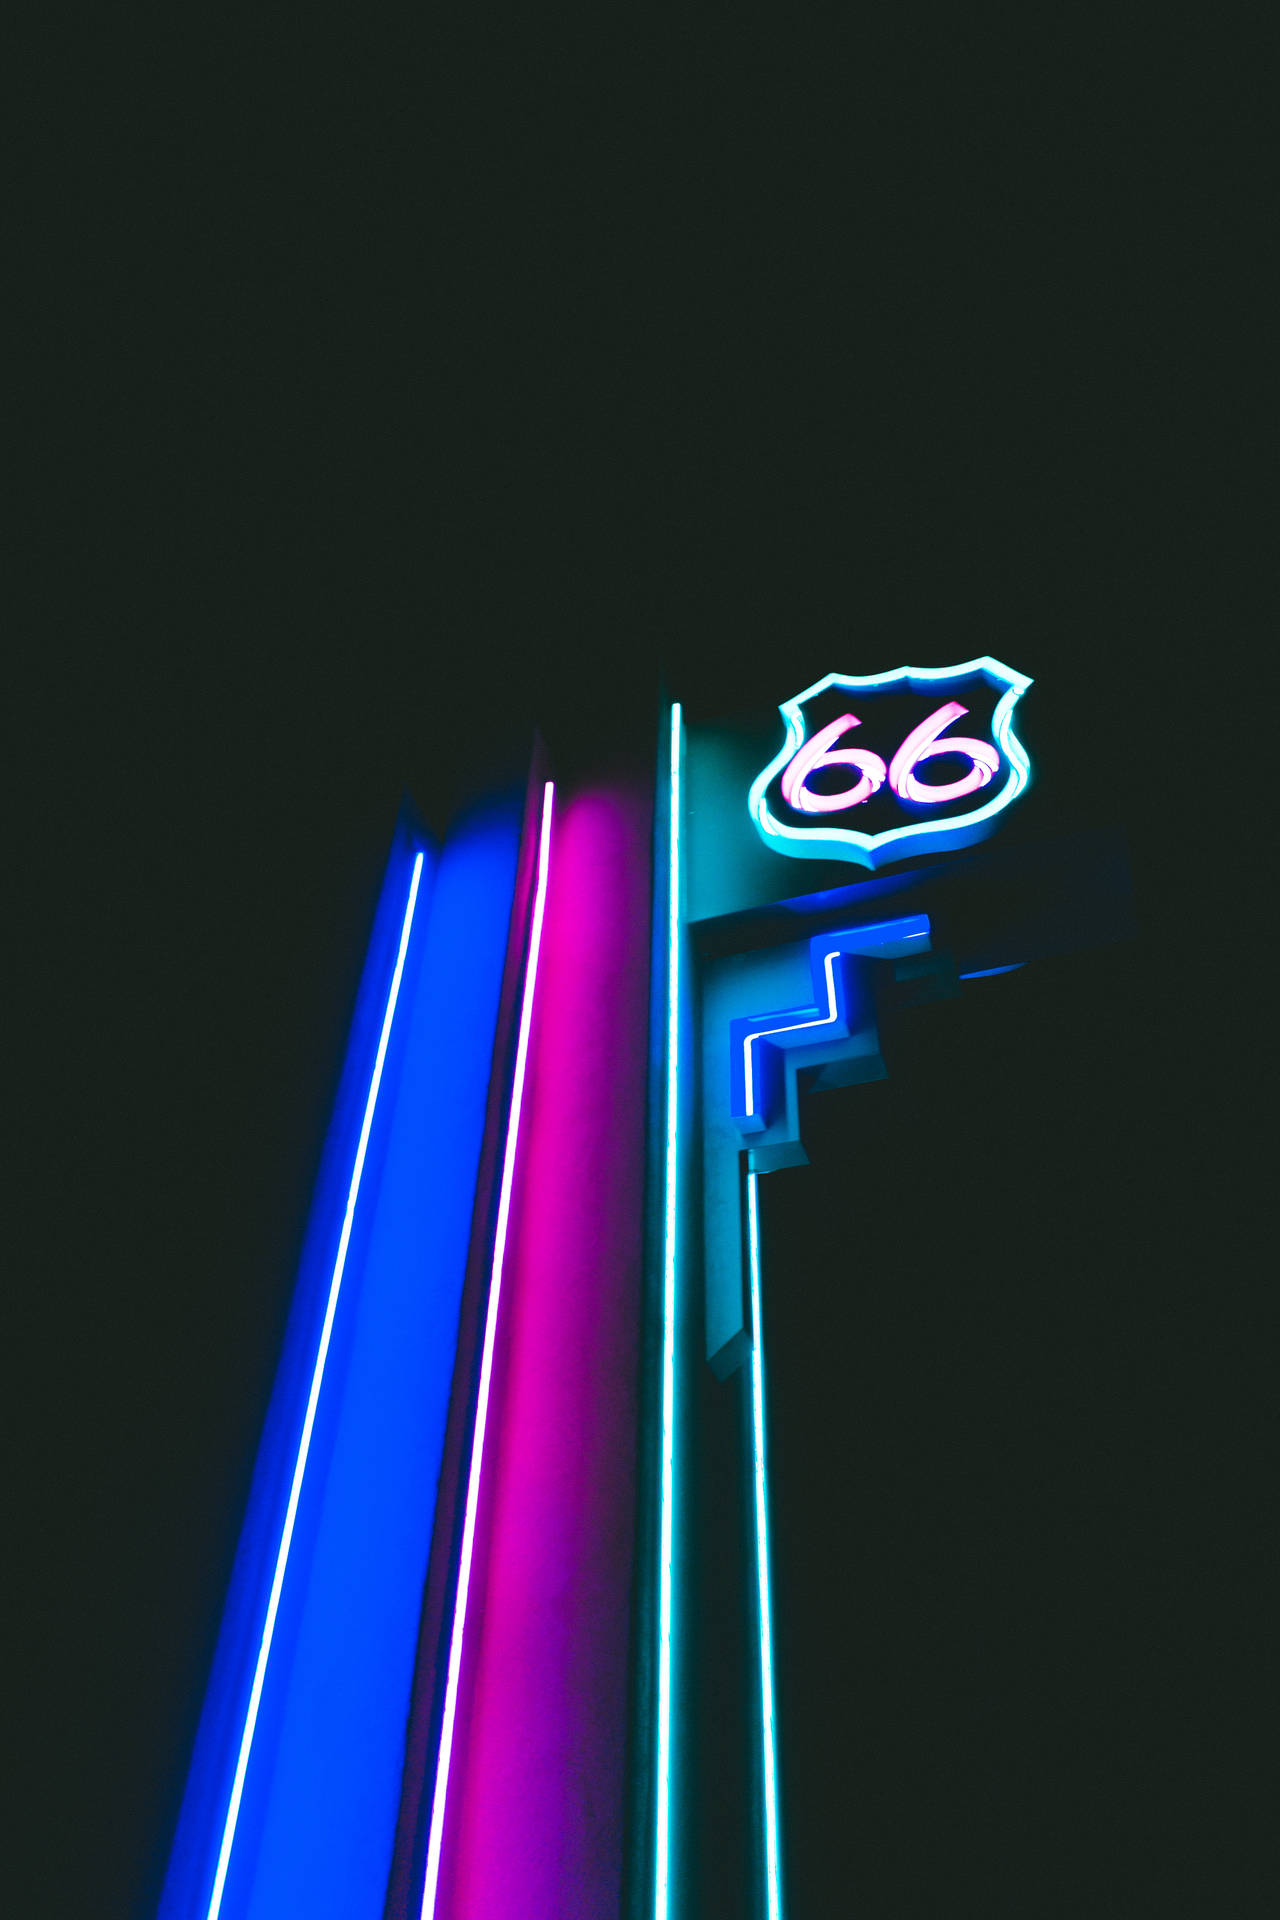 Neon 66 Board Wallpaper